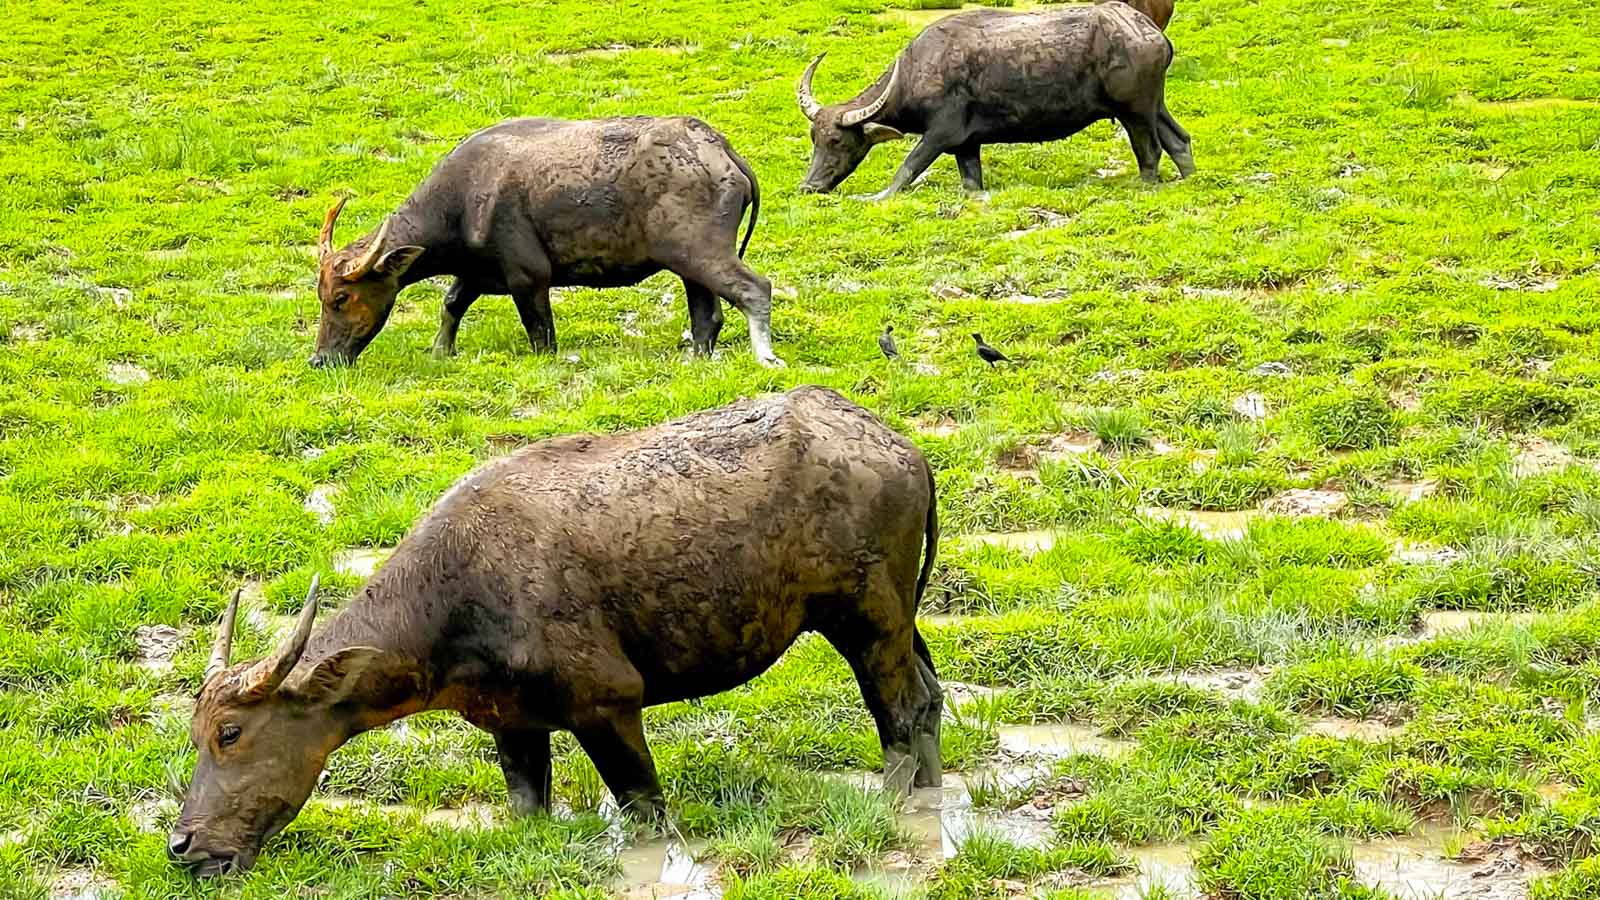 Water Buffalo grazing in Thailand